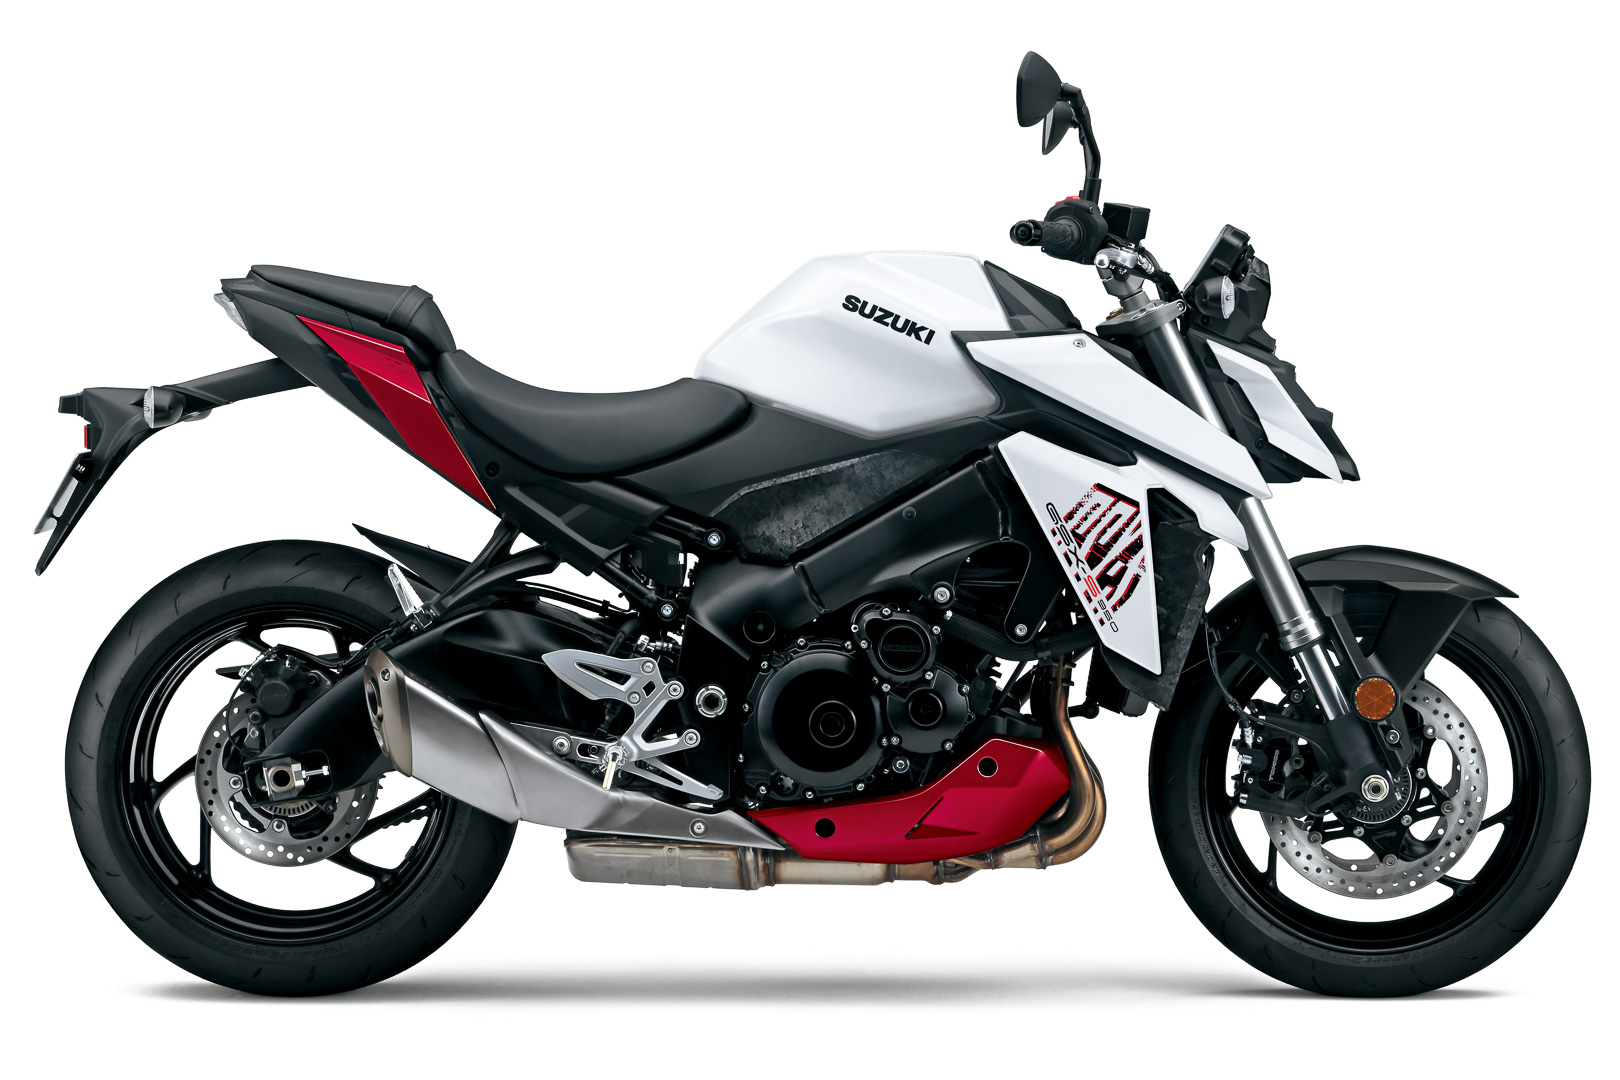 2022 suzuki gsx s950 first look sport motorcycle 3